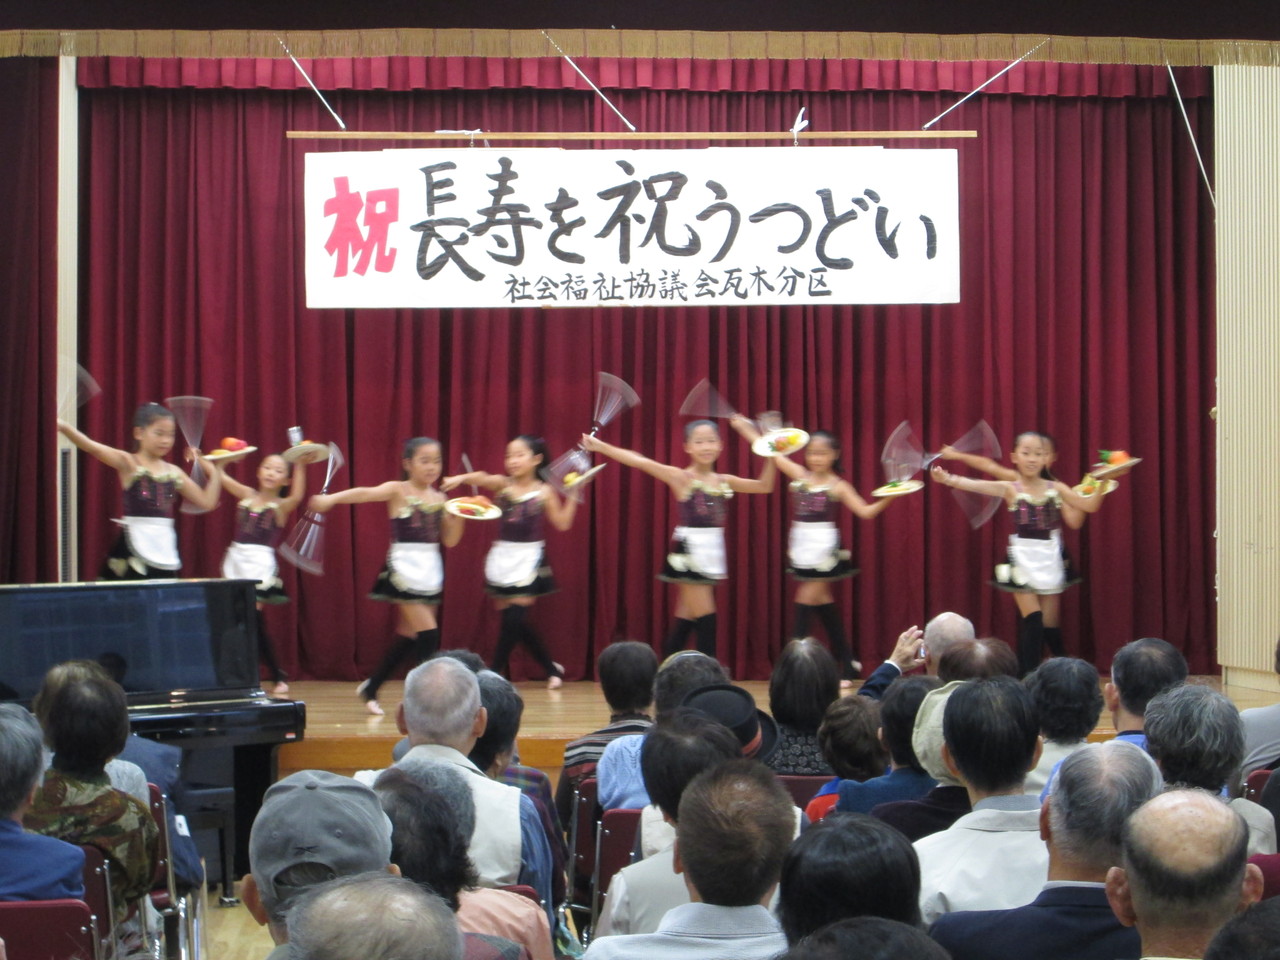 トップは地区の子供たちによるバトン競技。先日の兵庫県大会で金賞を獲得しました。そのかわいいこと！